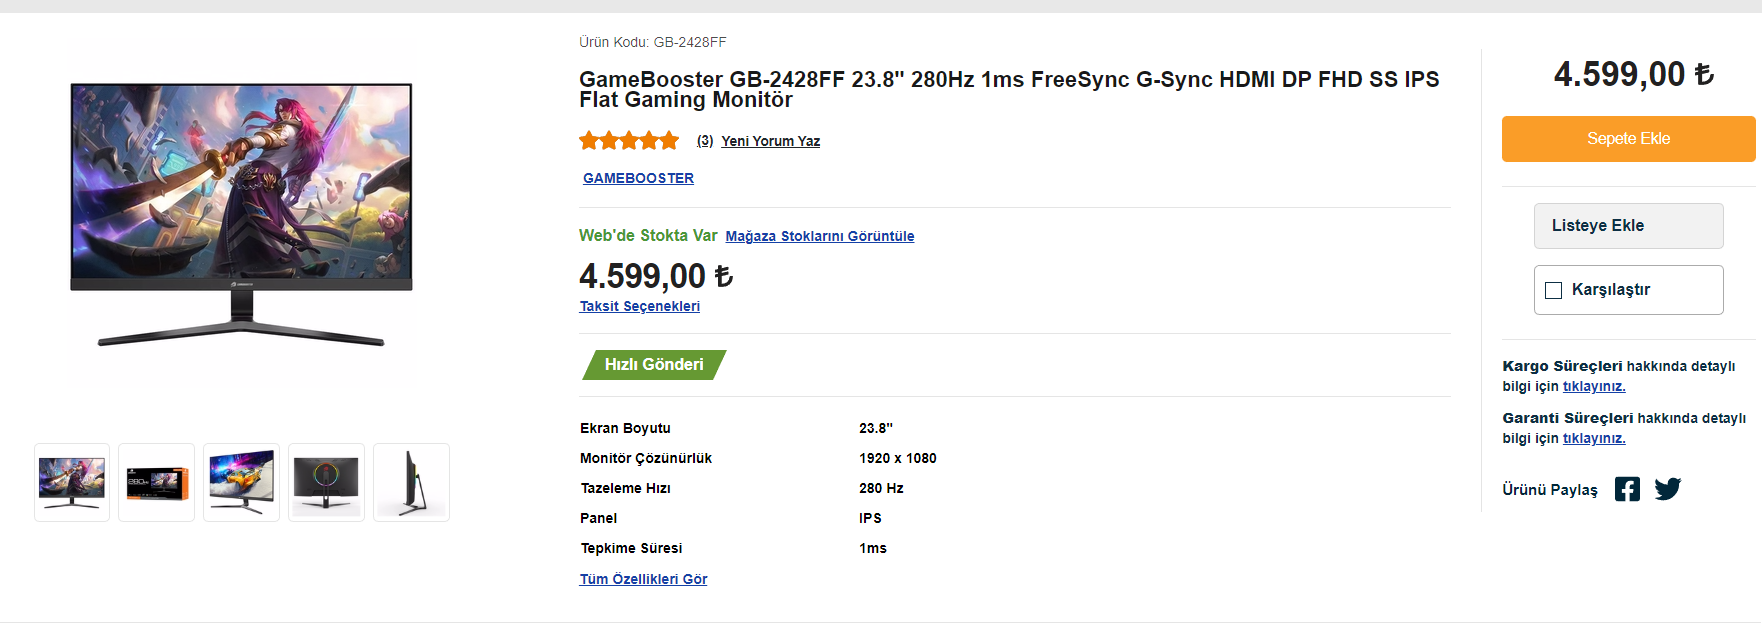 GameBooster GB-2428FF 23.8" monitör alınır mı? | Technopat Sosyal